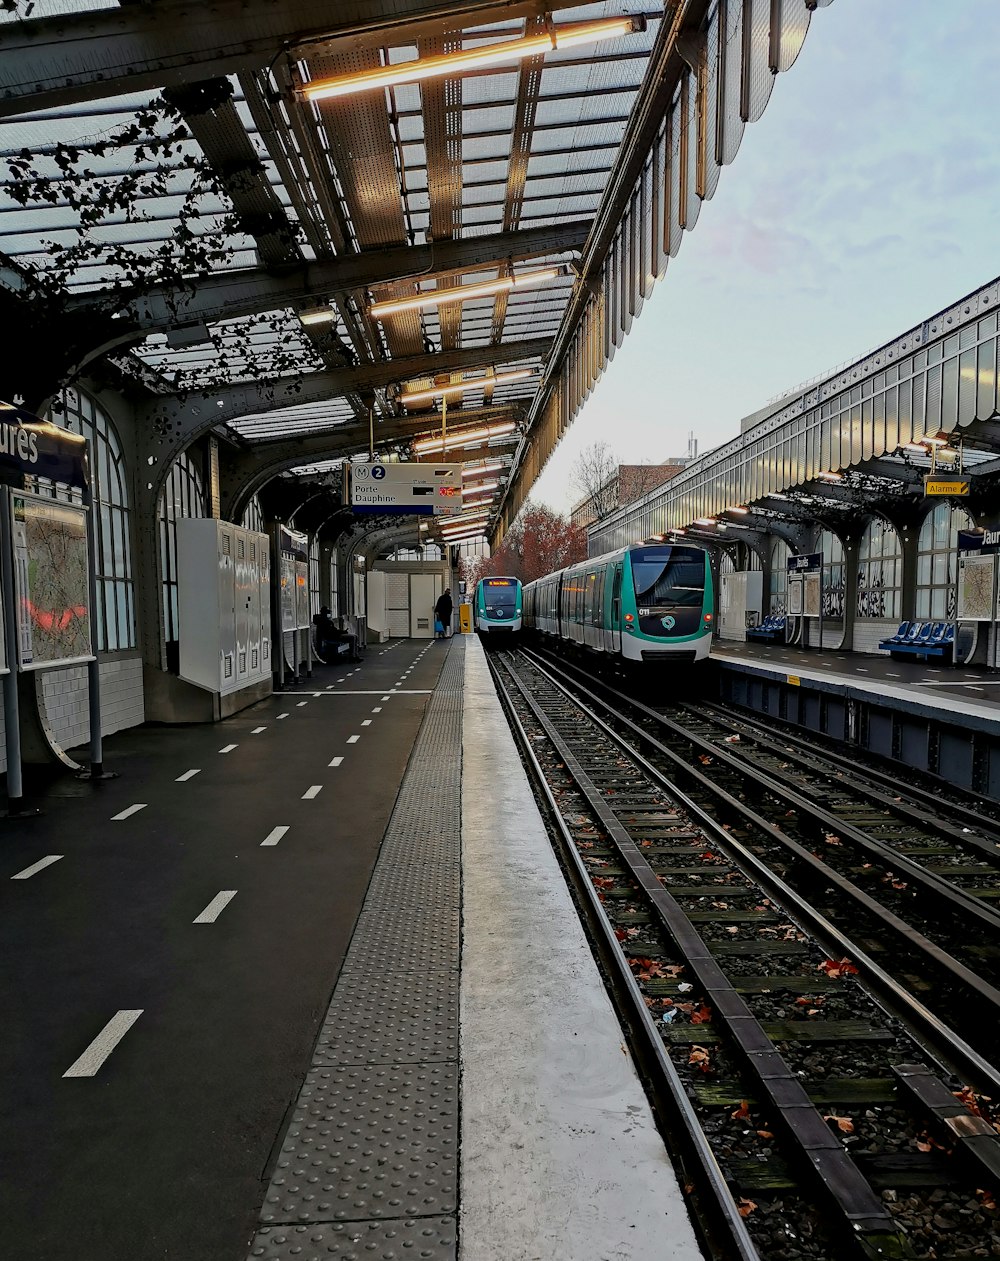 trem azul e branco na estação de trem durante o dia